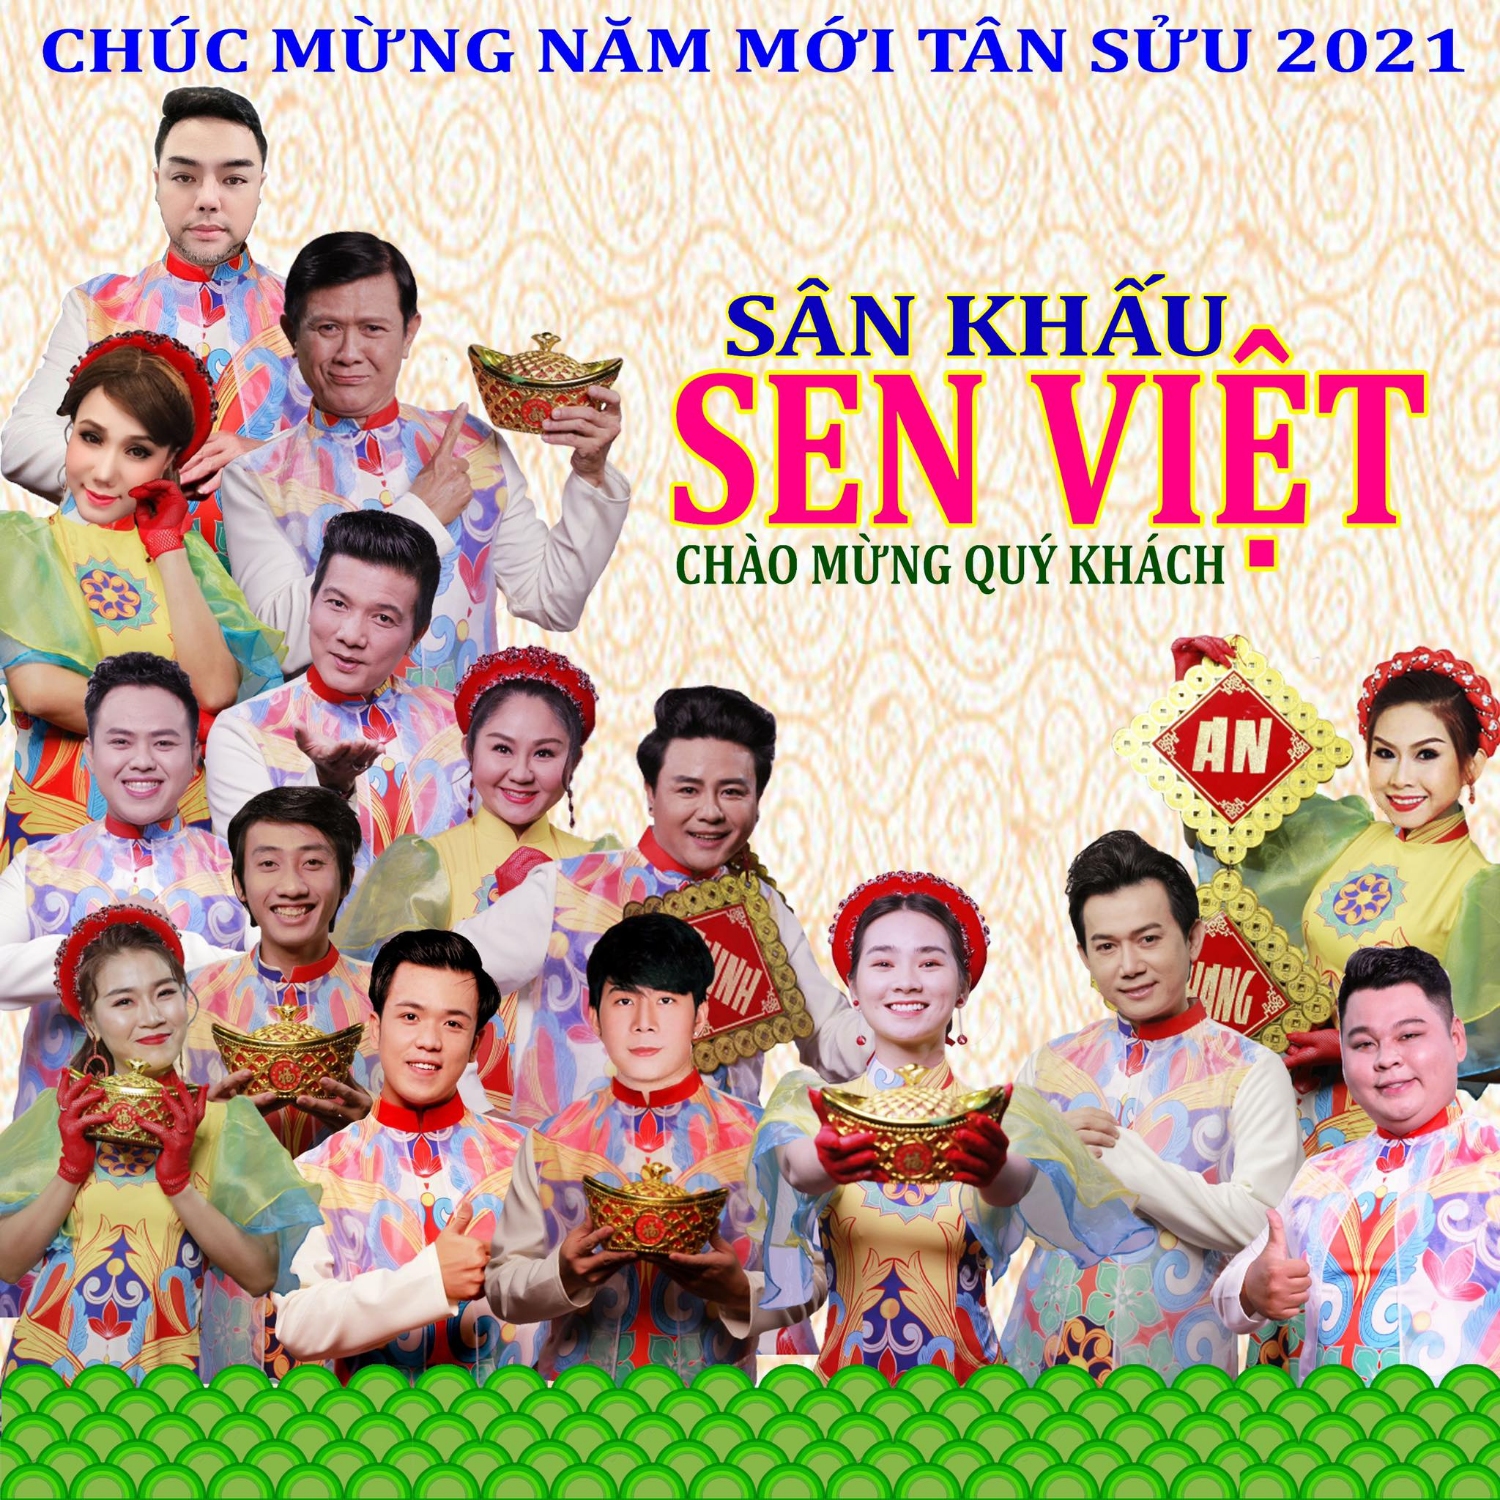 SK Sen Viet 2021 3